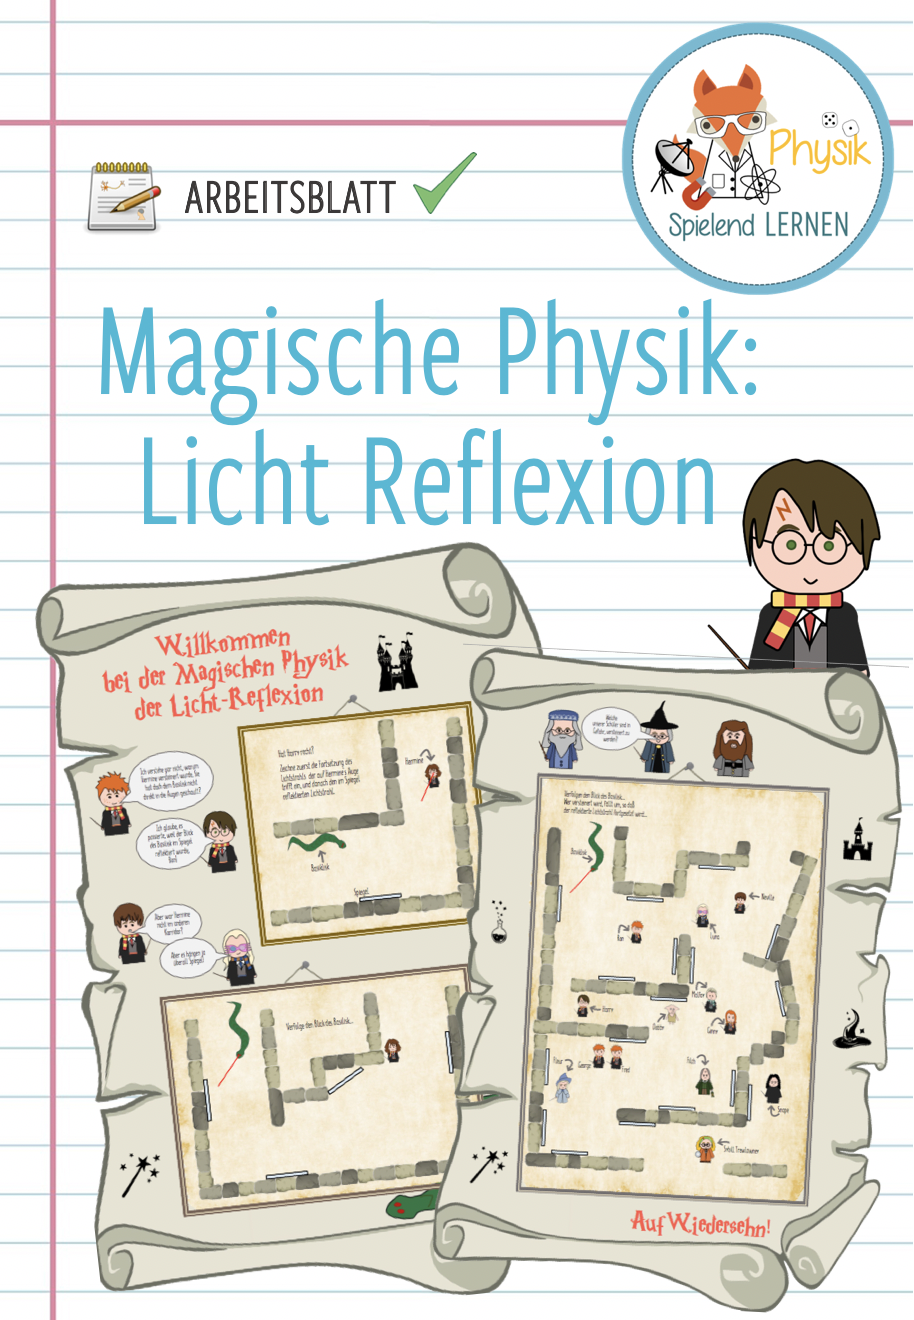 Magische Physik Reflexion Des Lichtes Arbeitsblatt Unterrichtsmaterial Im Fach Physik Physik Arbeitsblatter Arbeit